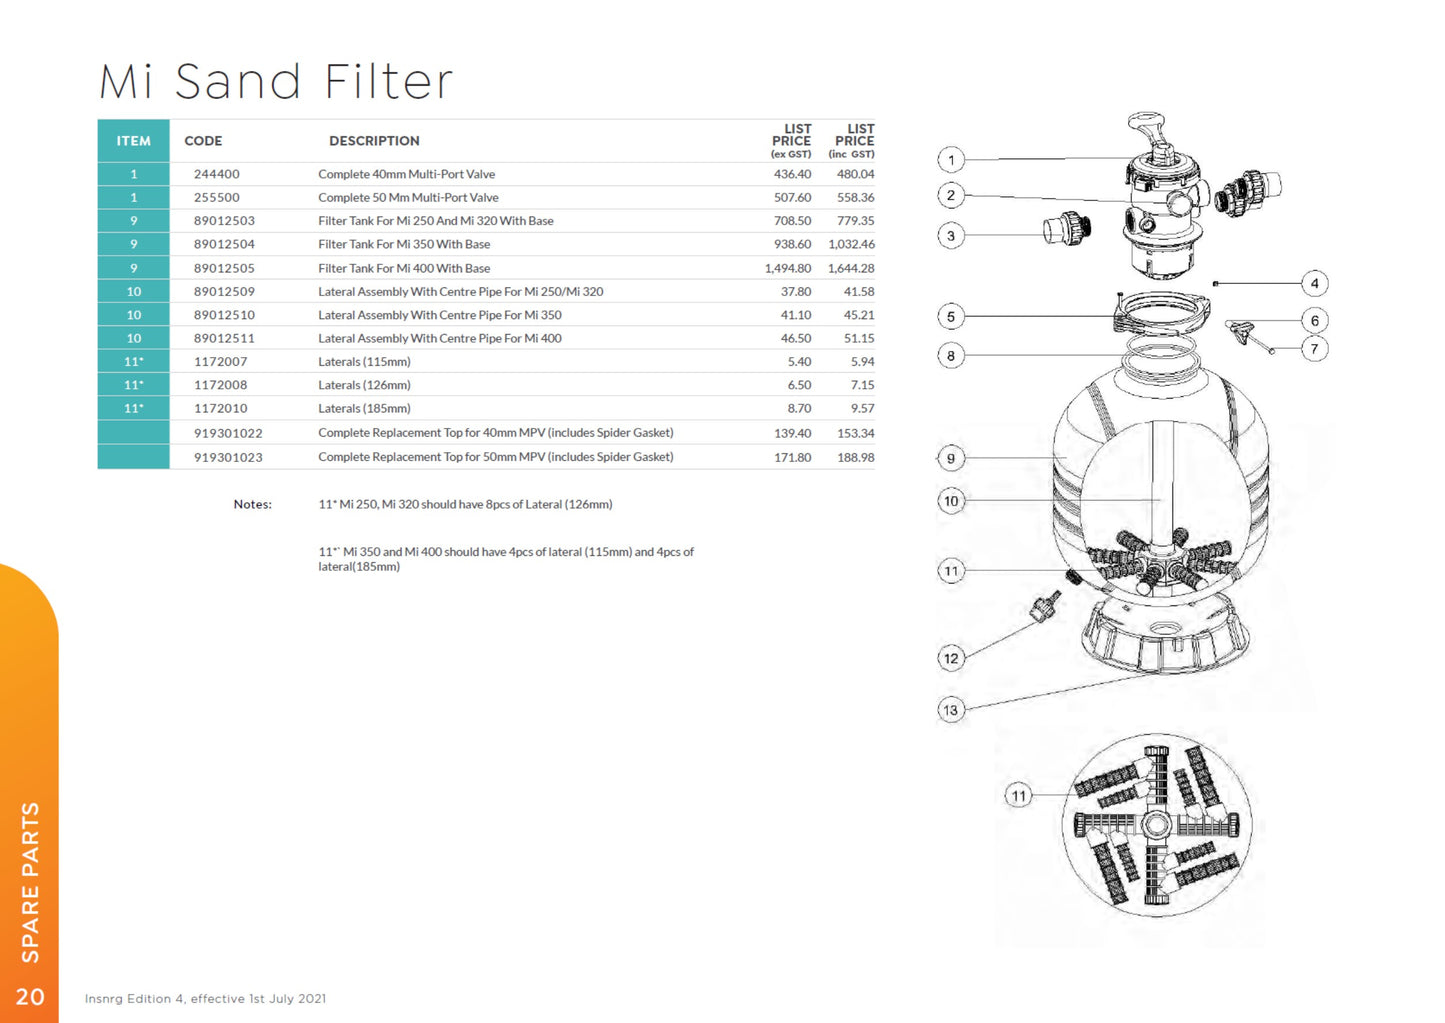 50mm Multiport Valve (MPV 50mm) - Insnrg Mi Media Filters [255500]